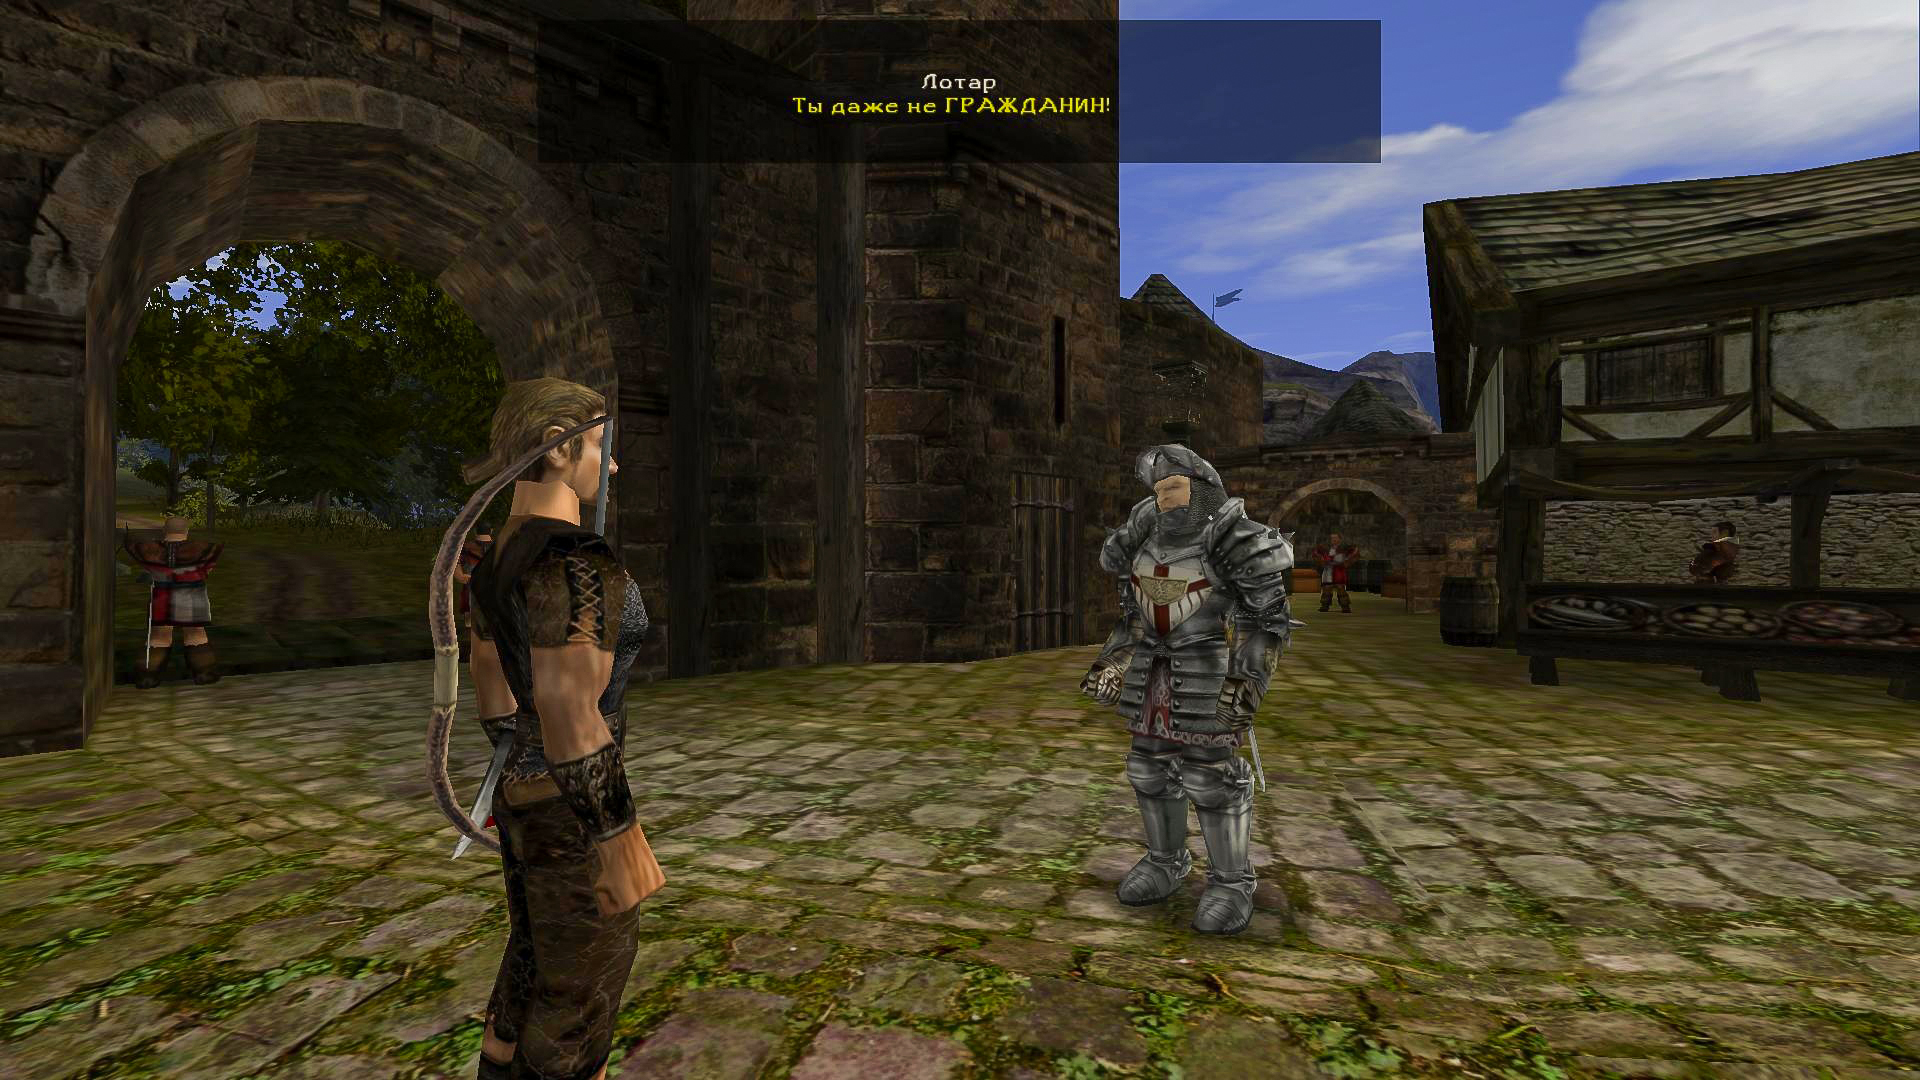 В начале игры героя встречают фразой, которая стала культовой: «Ты даже не гражданин!»